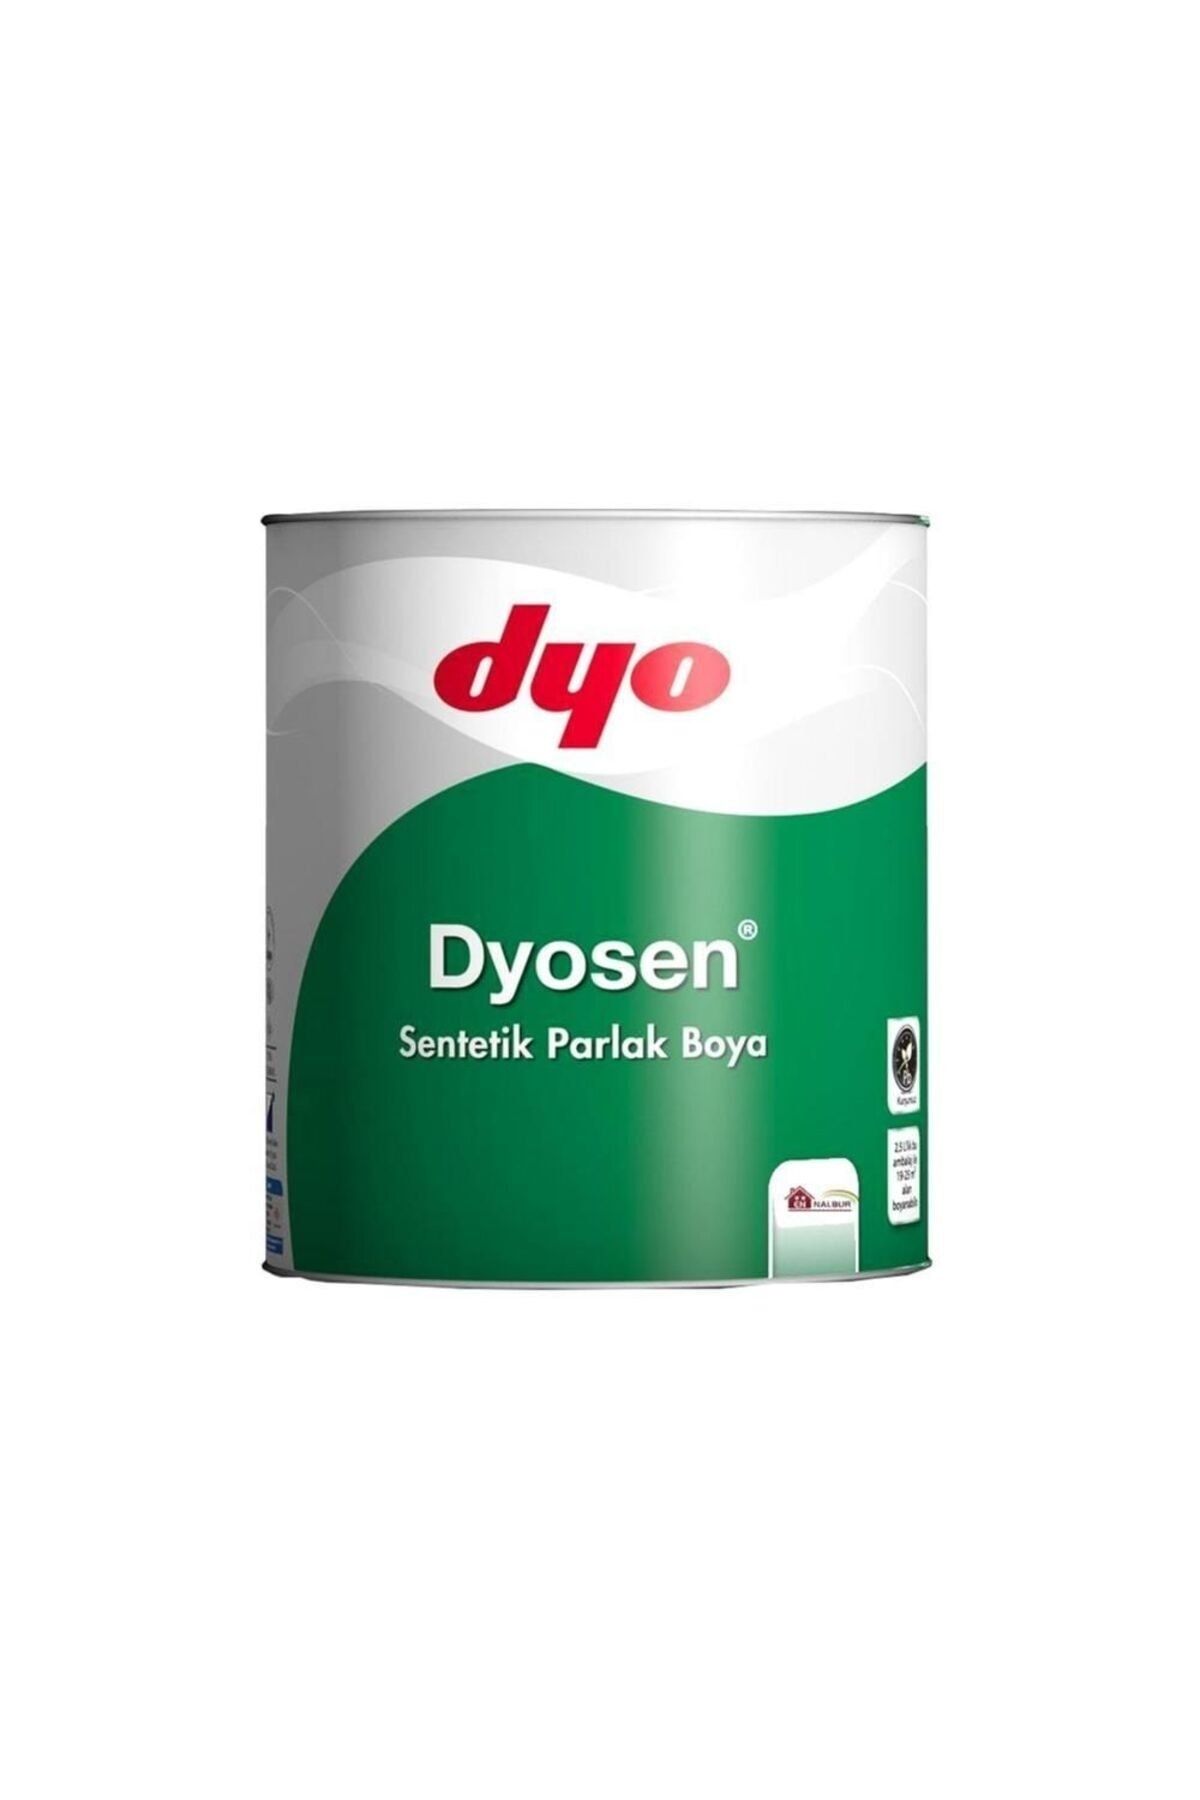 Dyo Dyosen Sentetik Parlak Boya - Yağlı Boya Turkuaz - 2.5lt